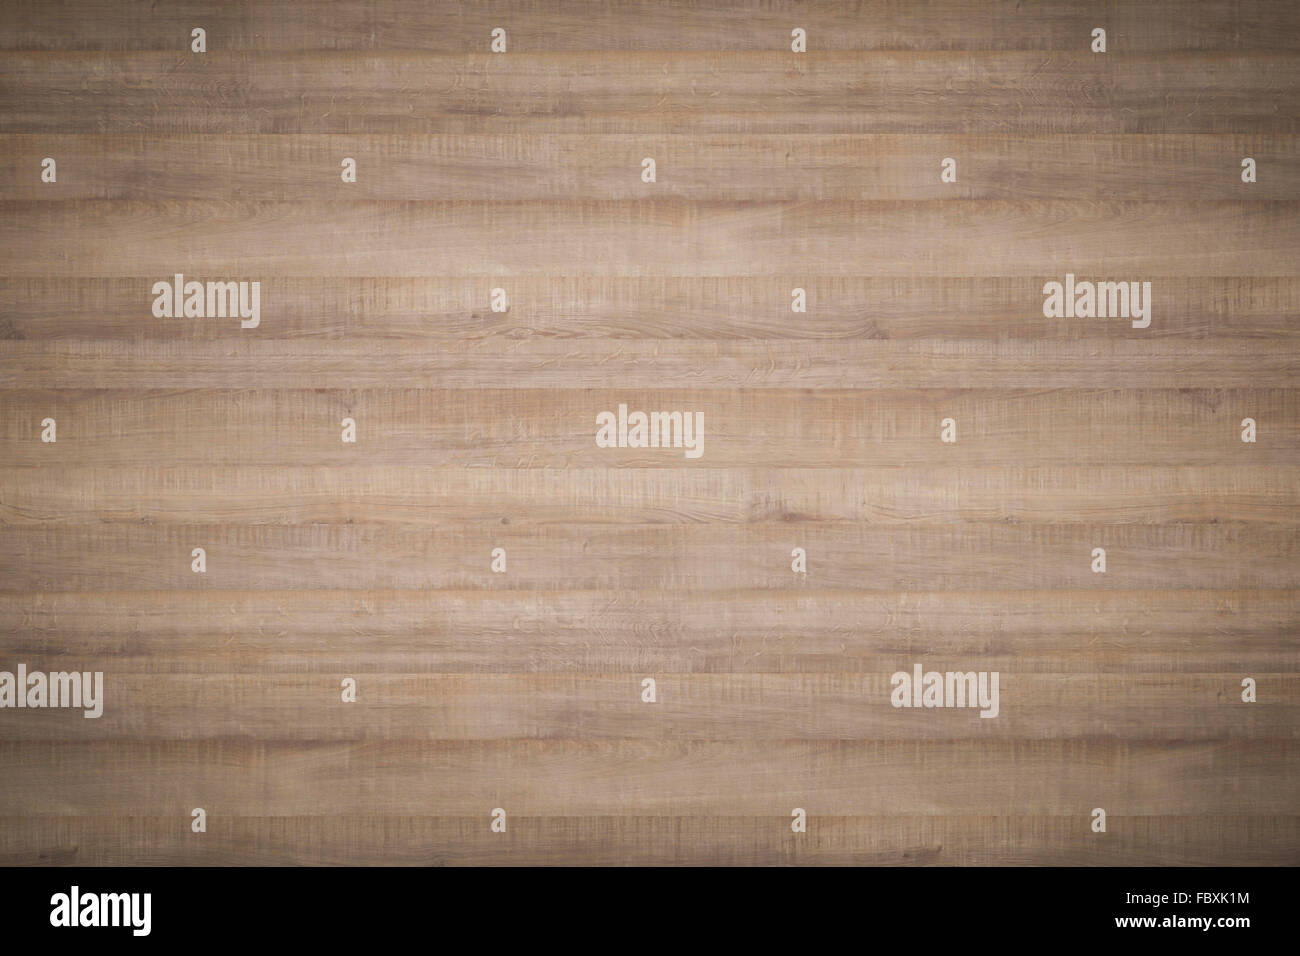 En bois qualité Hi utilisé comme arrière-plan de texture - lignes horizontales Banque D'Images